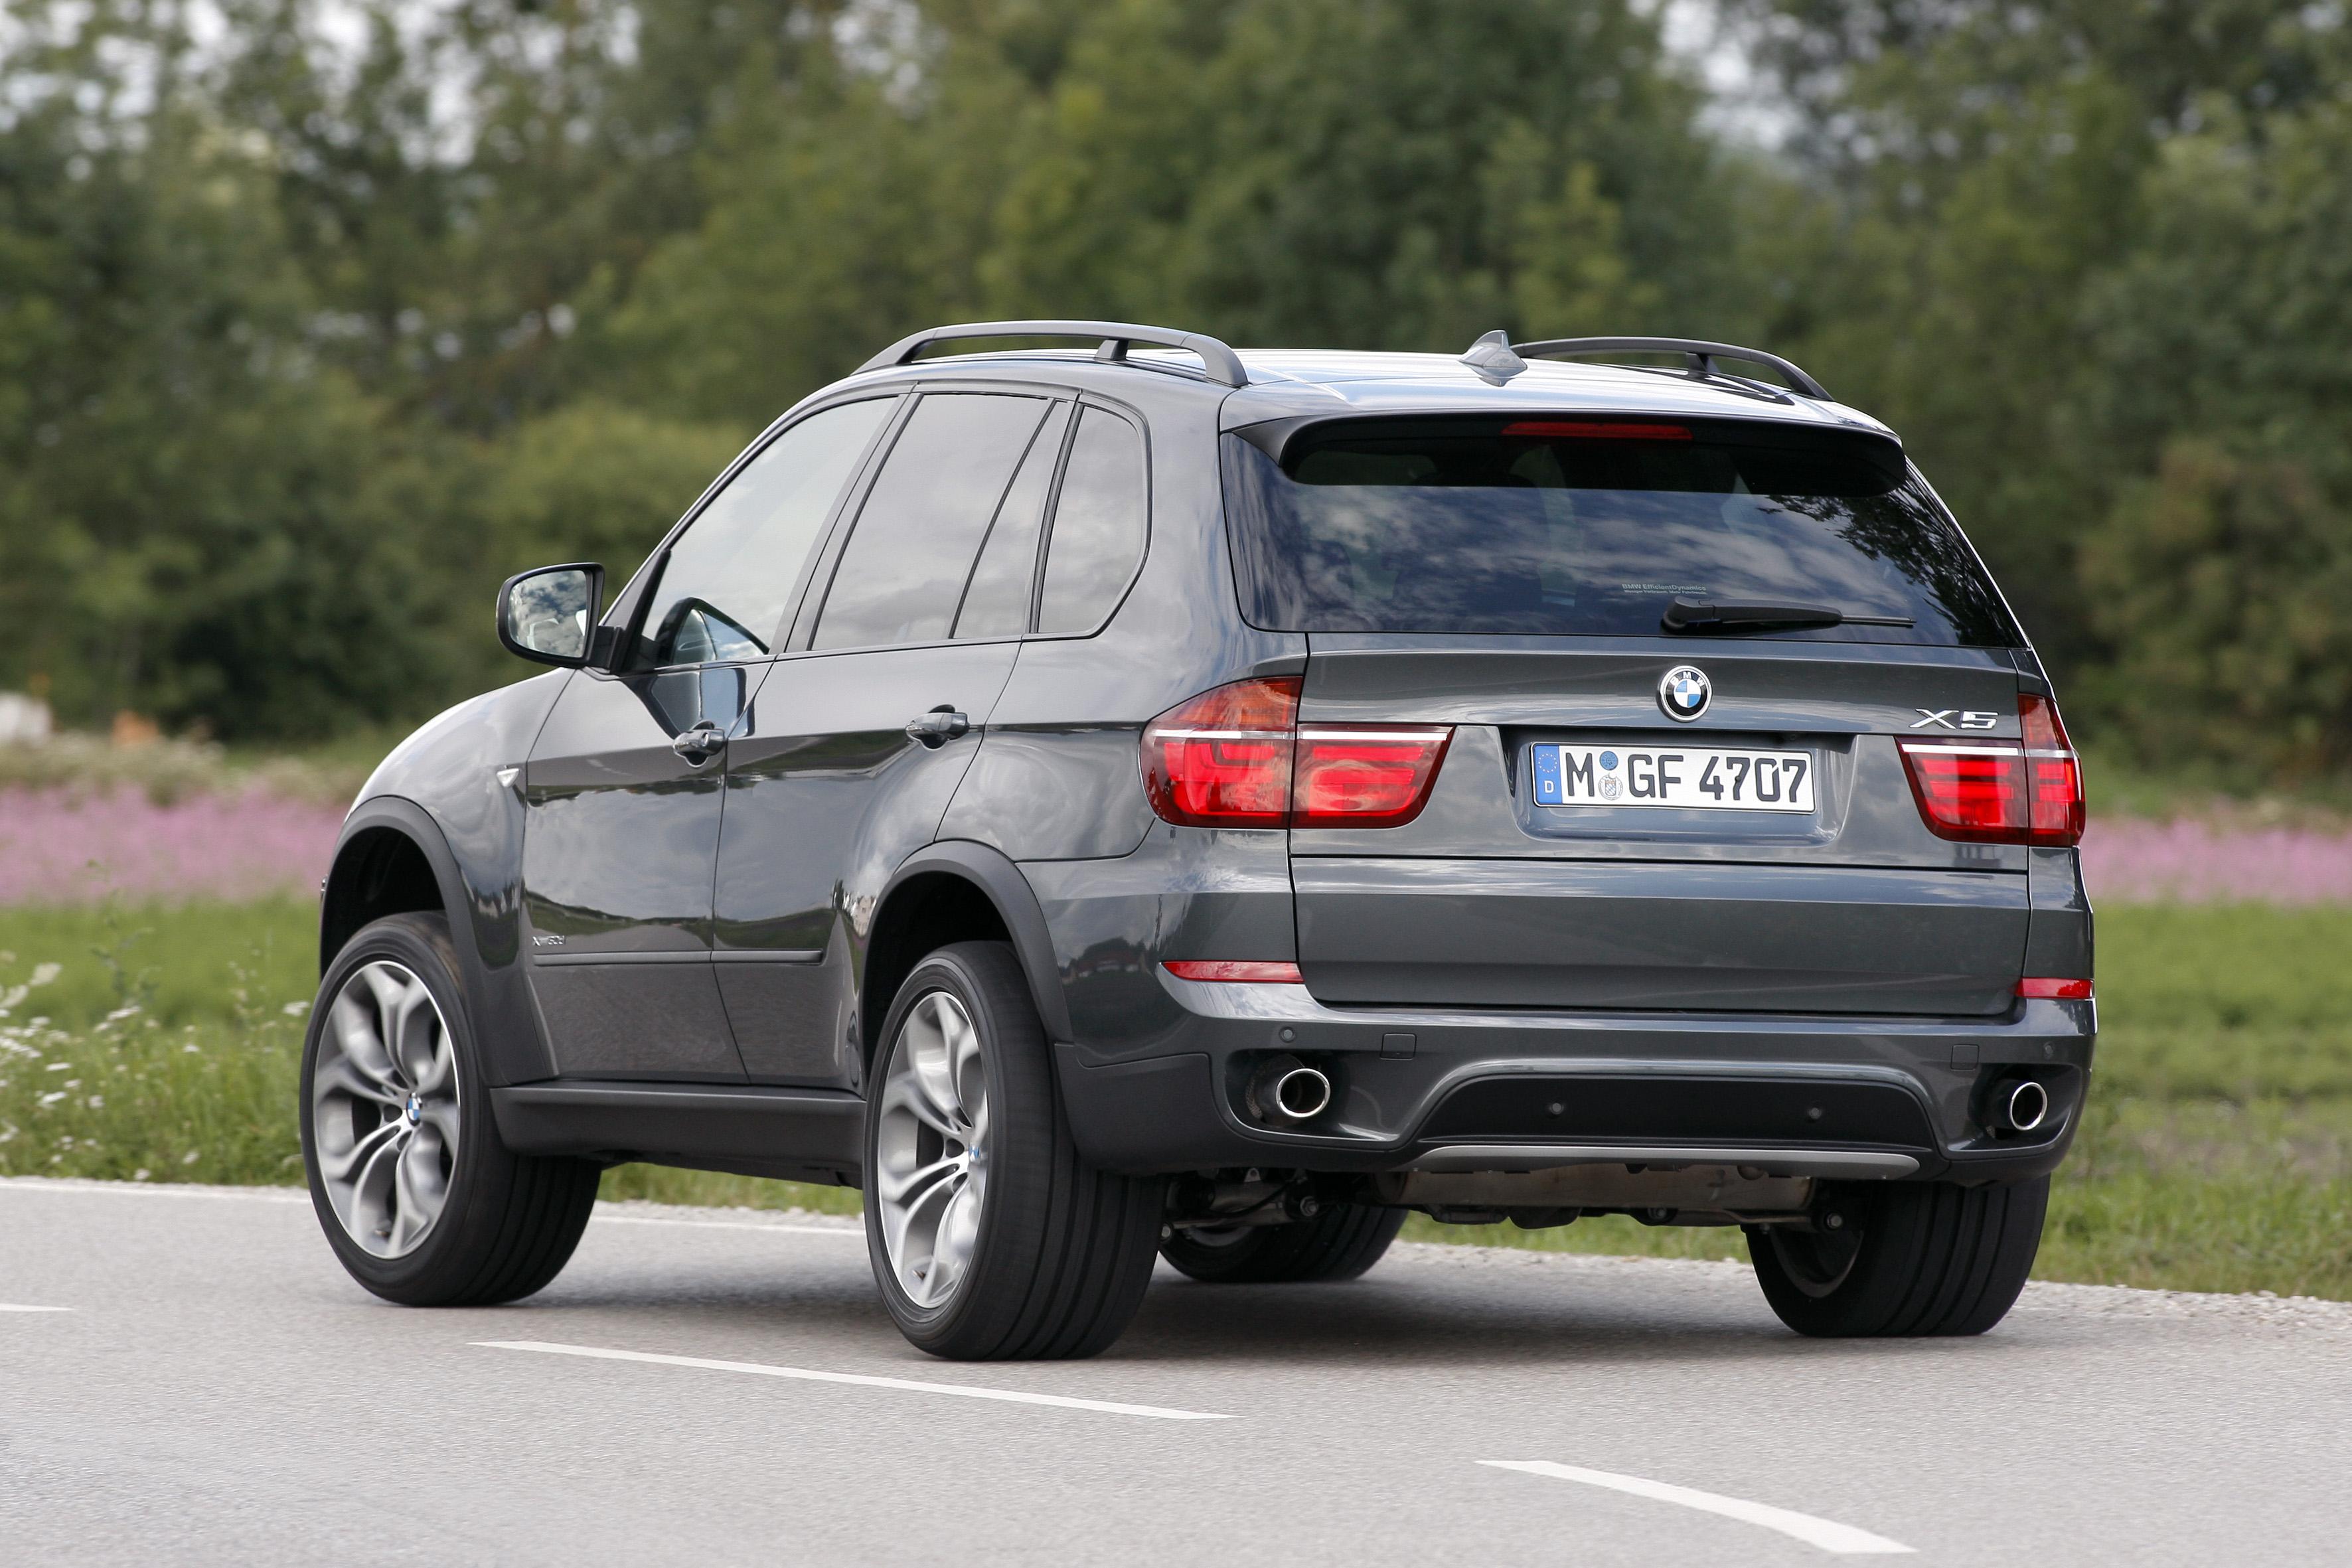 Fichier:BMW X5 (E70, Facelift) – Heckansicht, 1. Mai 2012